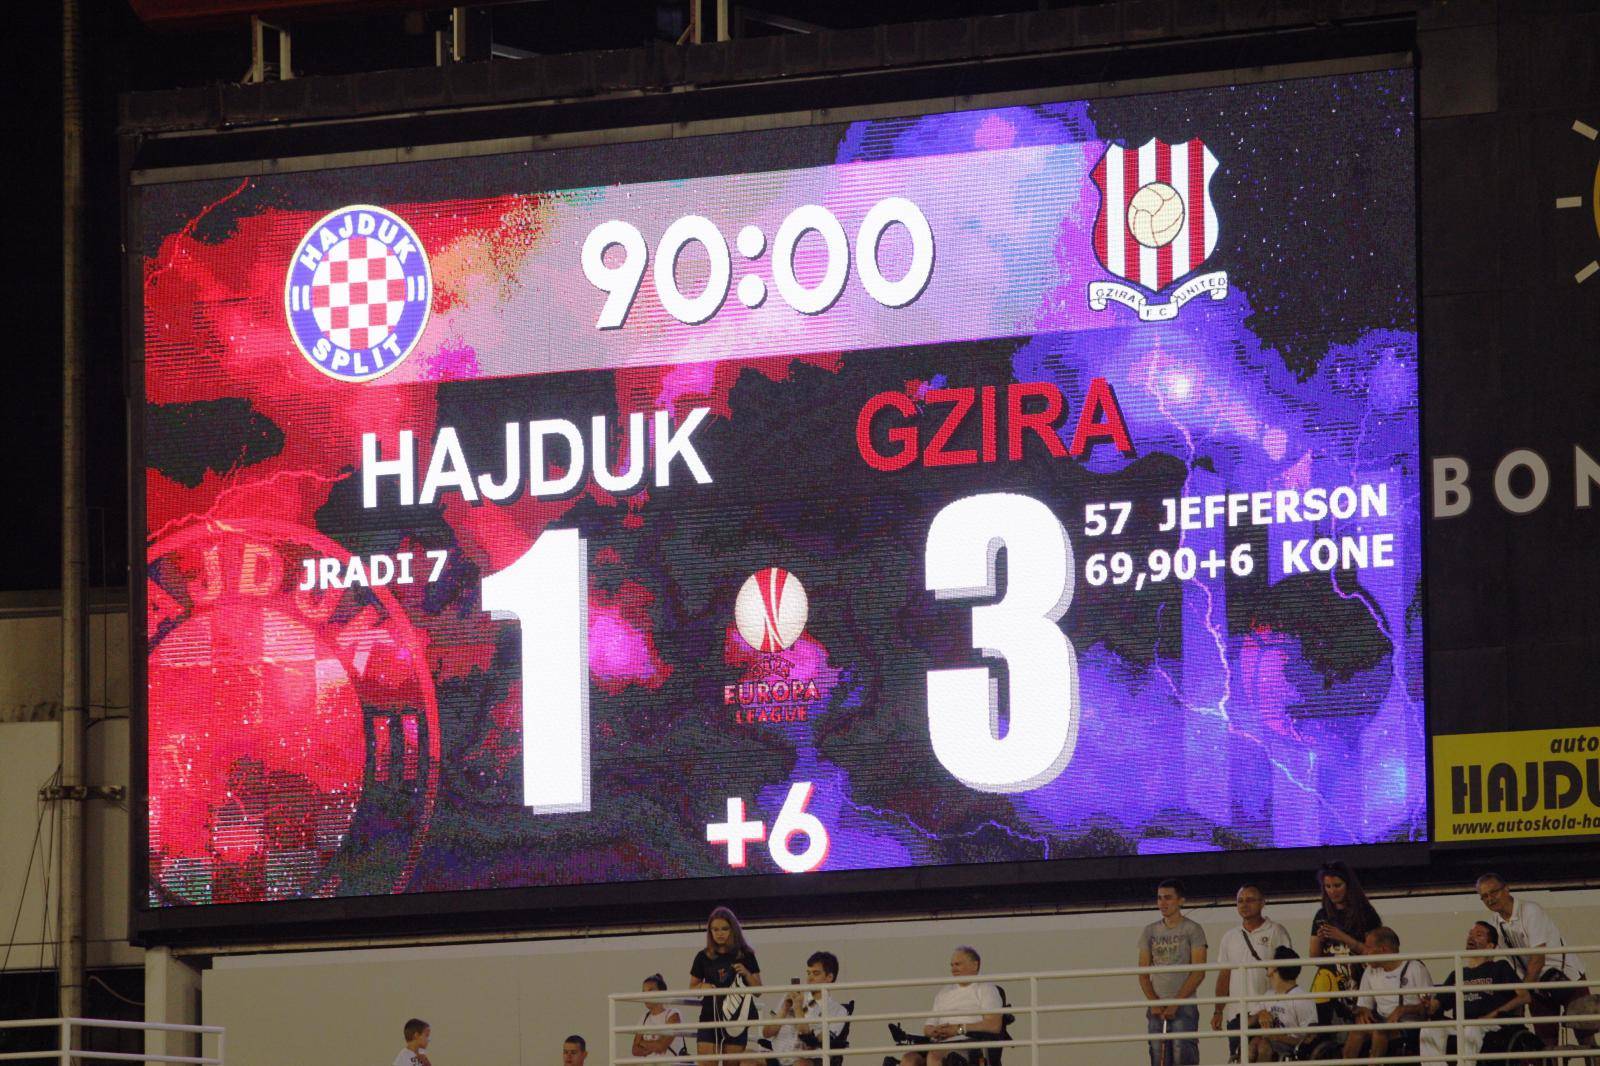 Najveća blamaža Hajduka ikad: Izbacili su ih malteški amateri